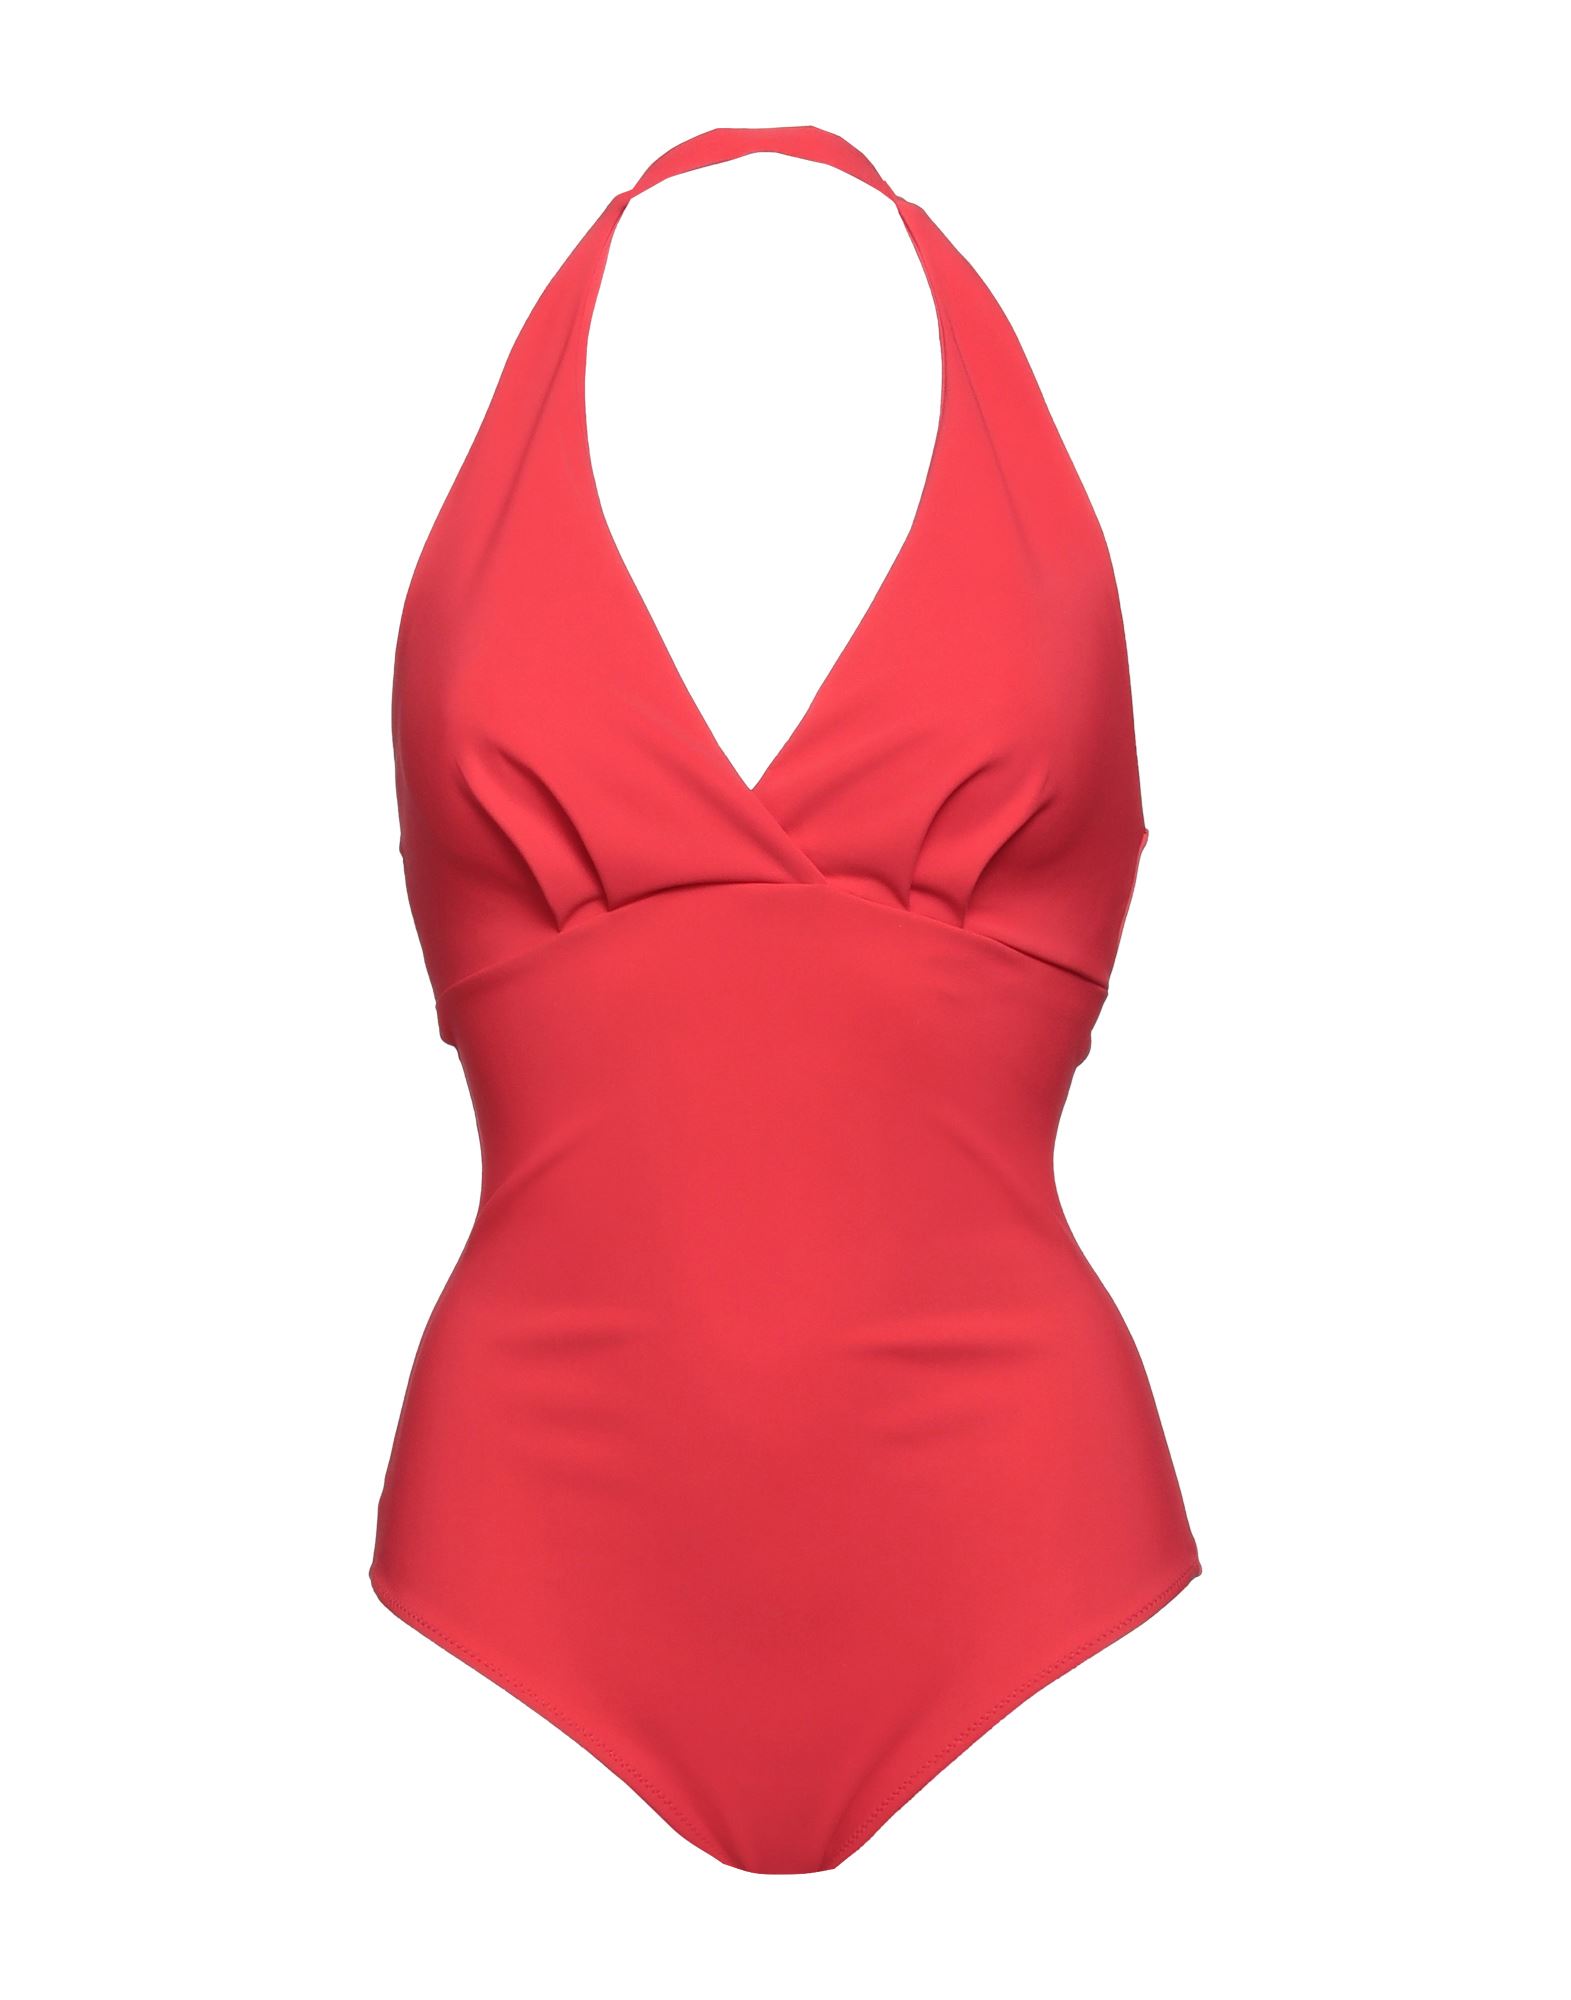 Chiara Boni La Petite Robe One-piece Swimsuits In Red